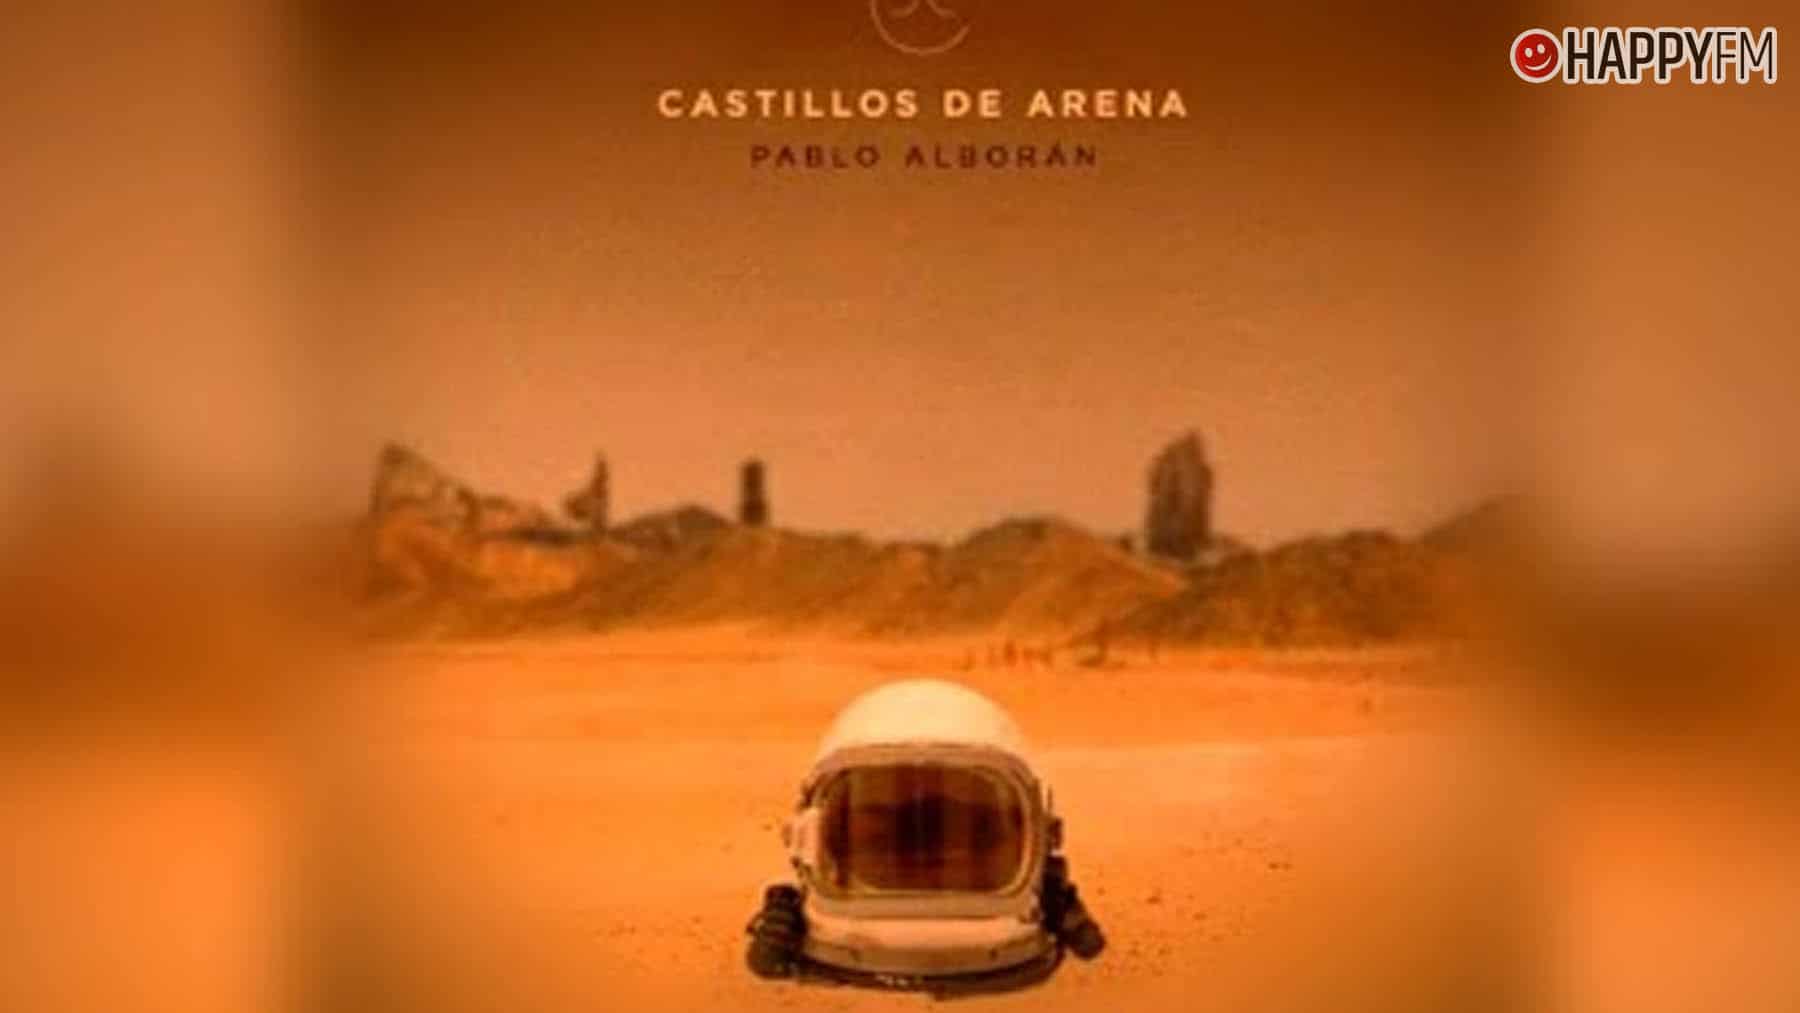 ‘Castillos de arena’, de Pablo Alborán: letra y vídeo